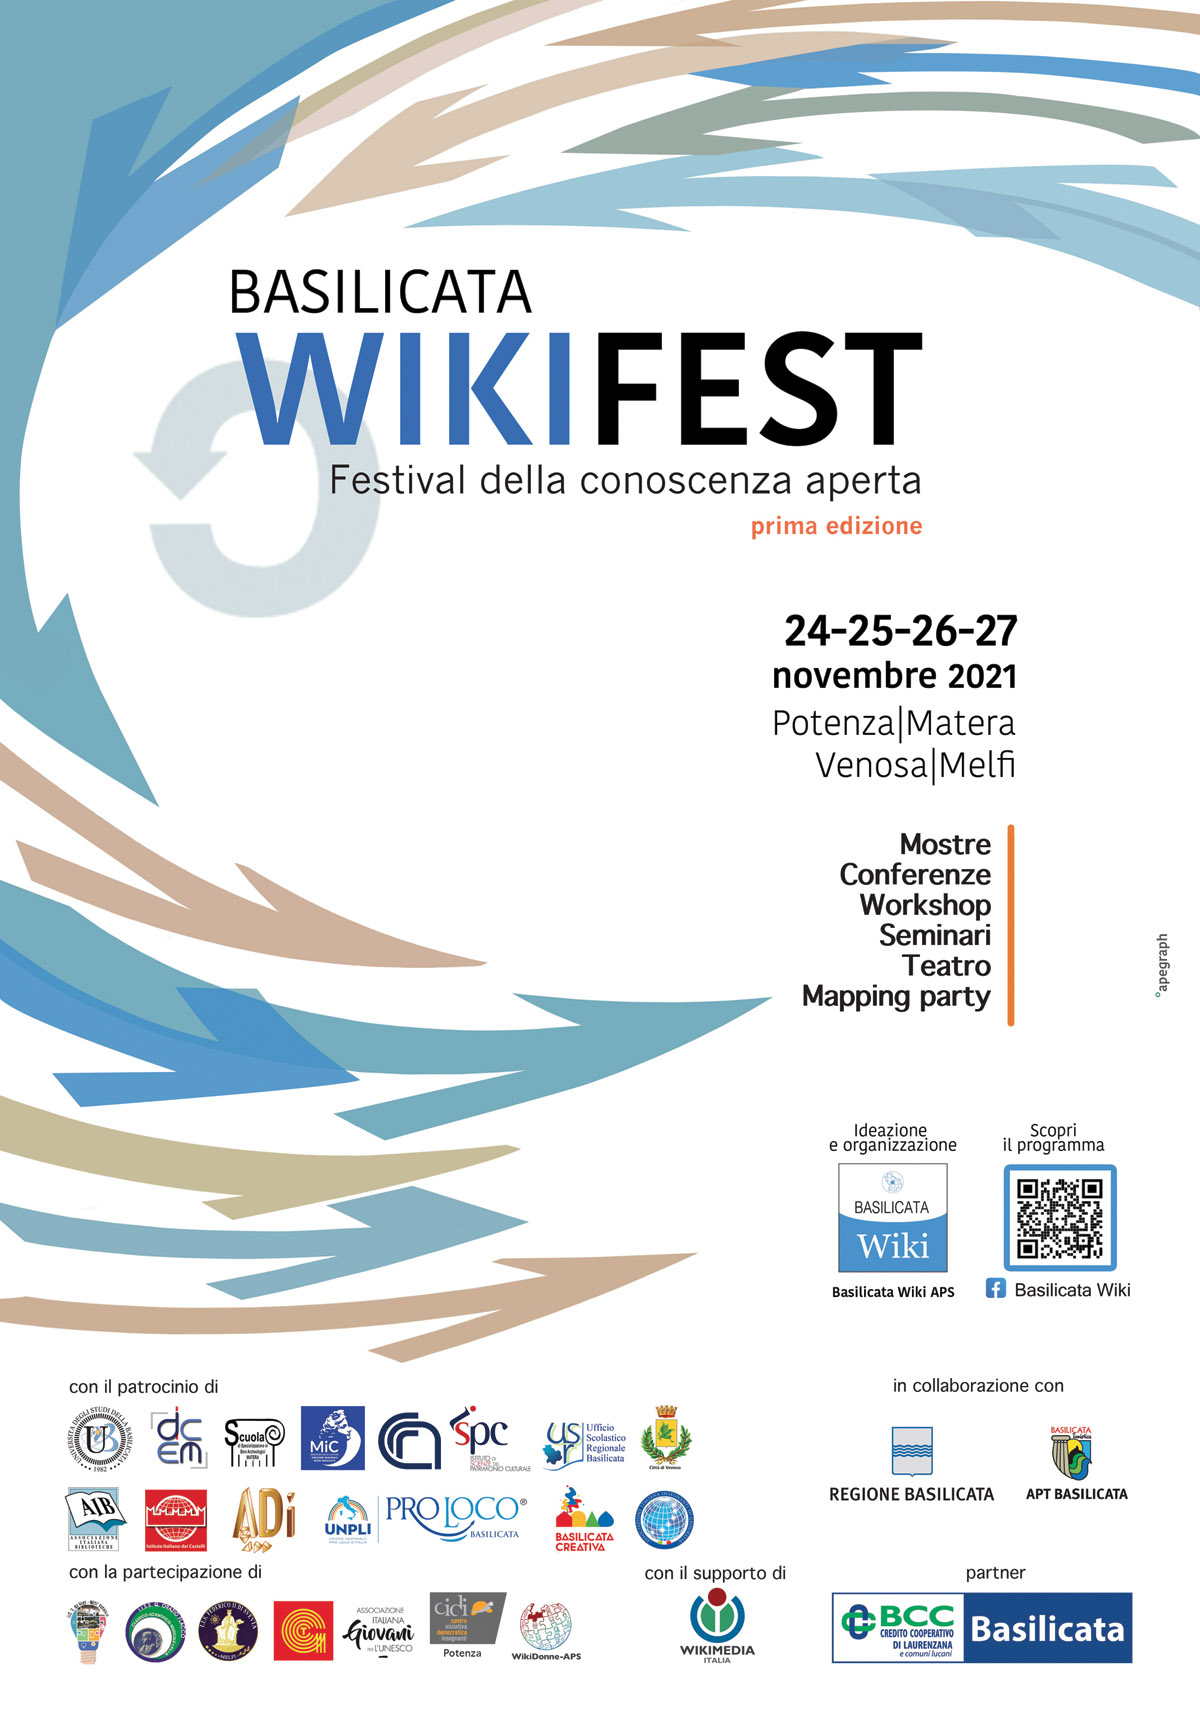 BASILICATA WIKI FEST 2021 - Festival della conoscenza aperta. Prima edizione